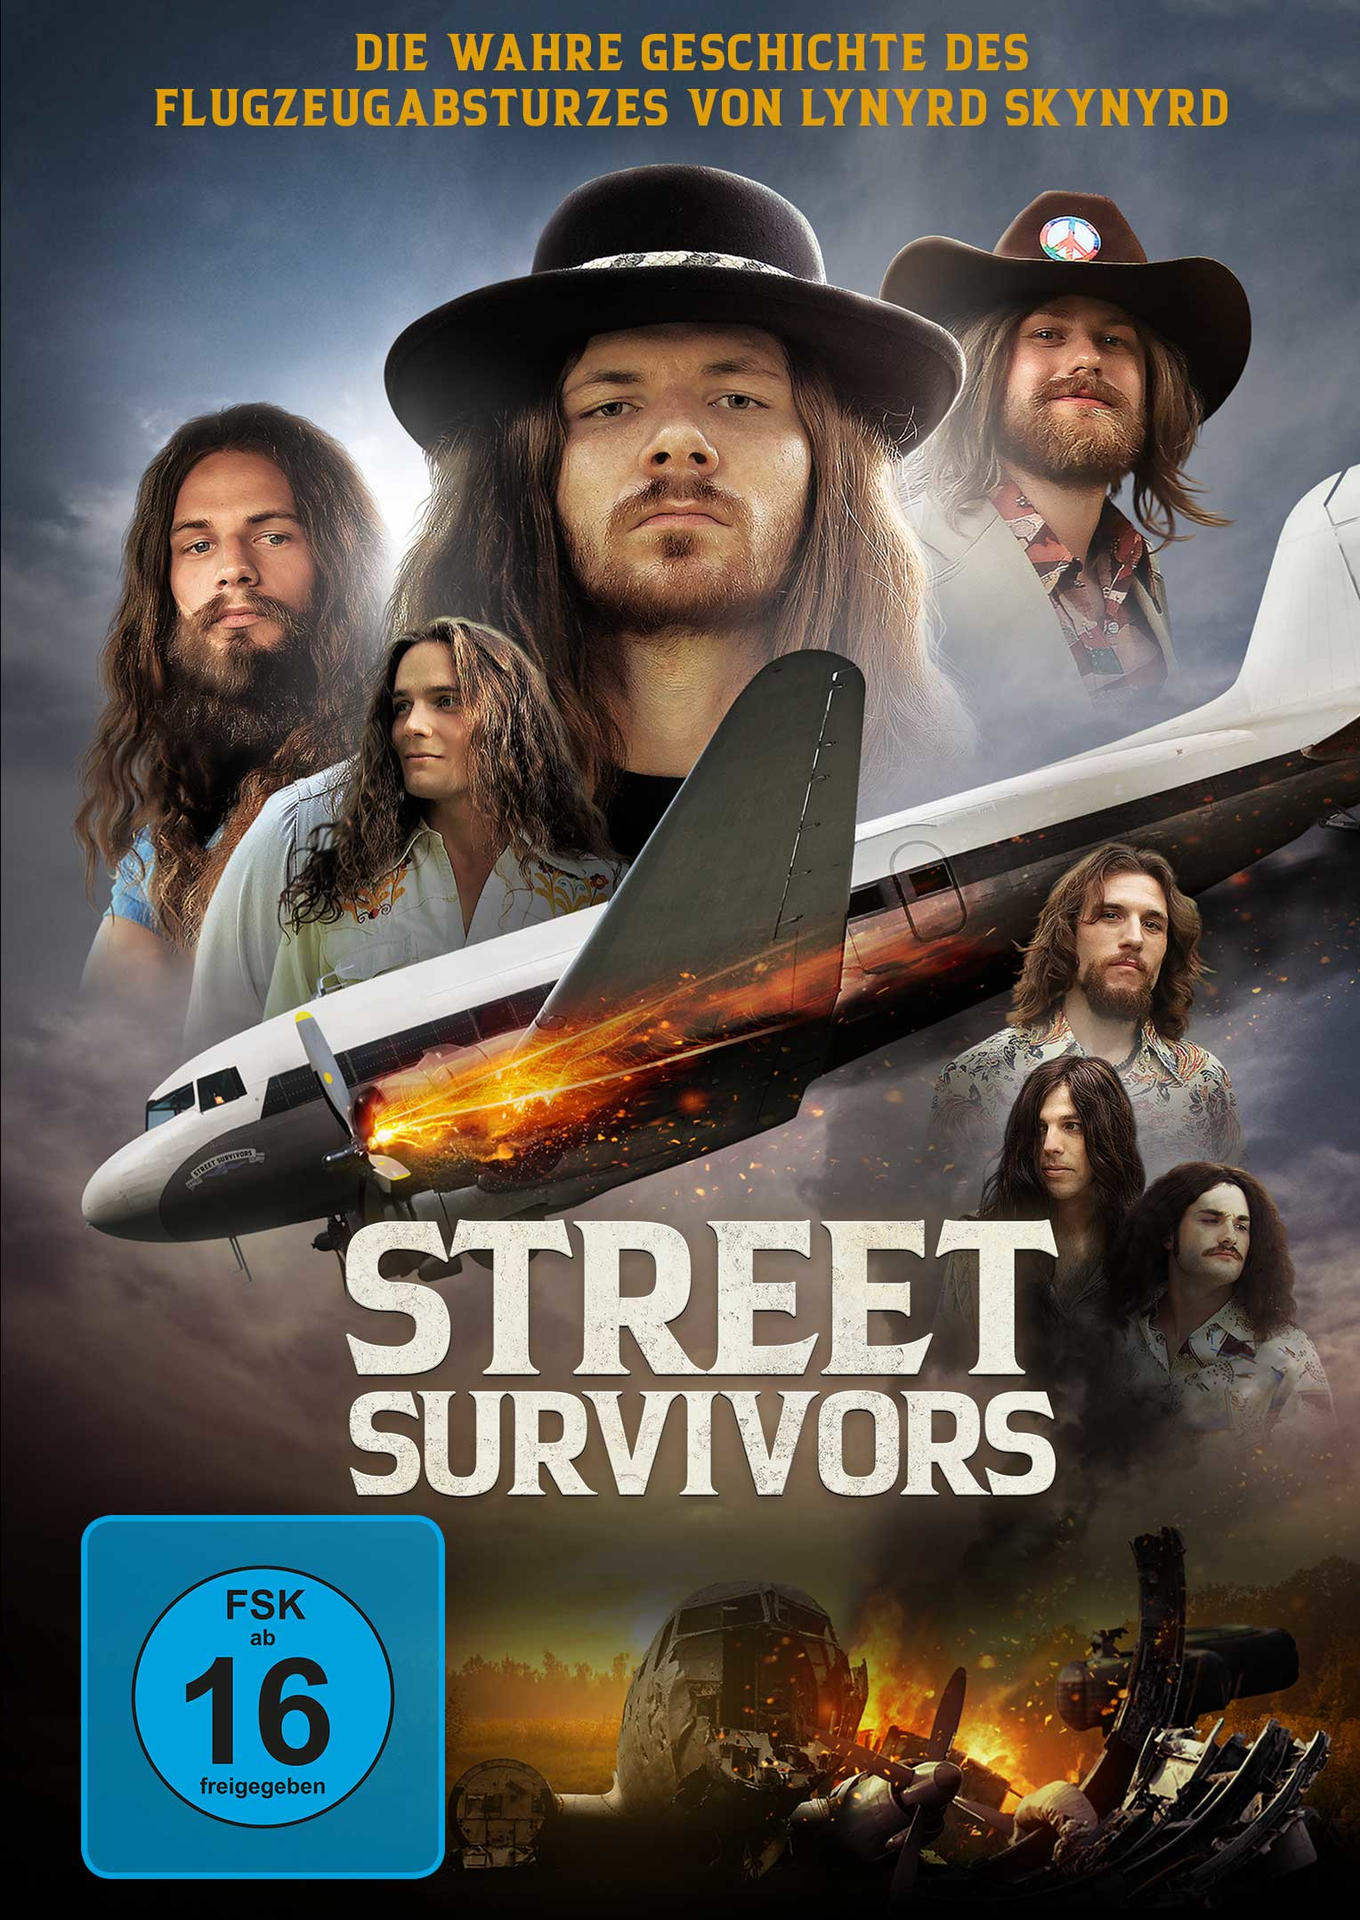 Lynyrd DVD Survivors Flugzeugabsturzes Street Skynyrd Die - von wahre Geschichte des